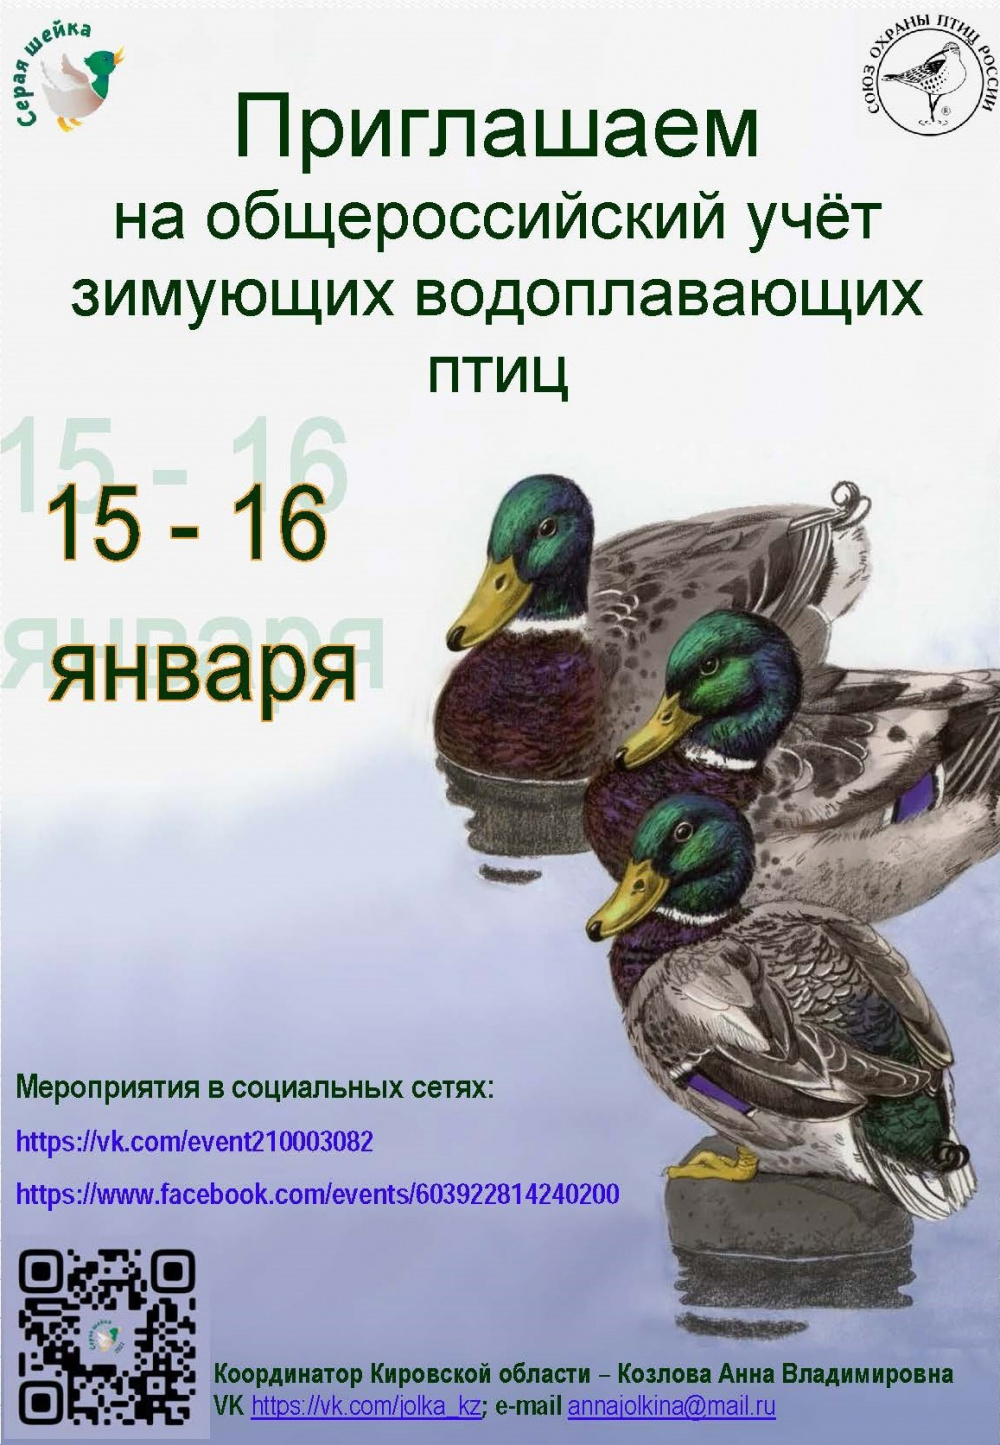 В Кировской области состоится общероссийский учёт зимующих водоплавающих птиц. Организатор акции - Союз охраны птиц России. Сроки проведения - 15-16 января 2022 года.